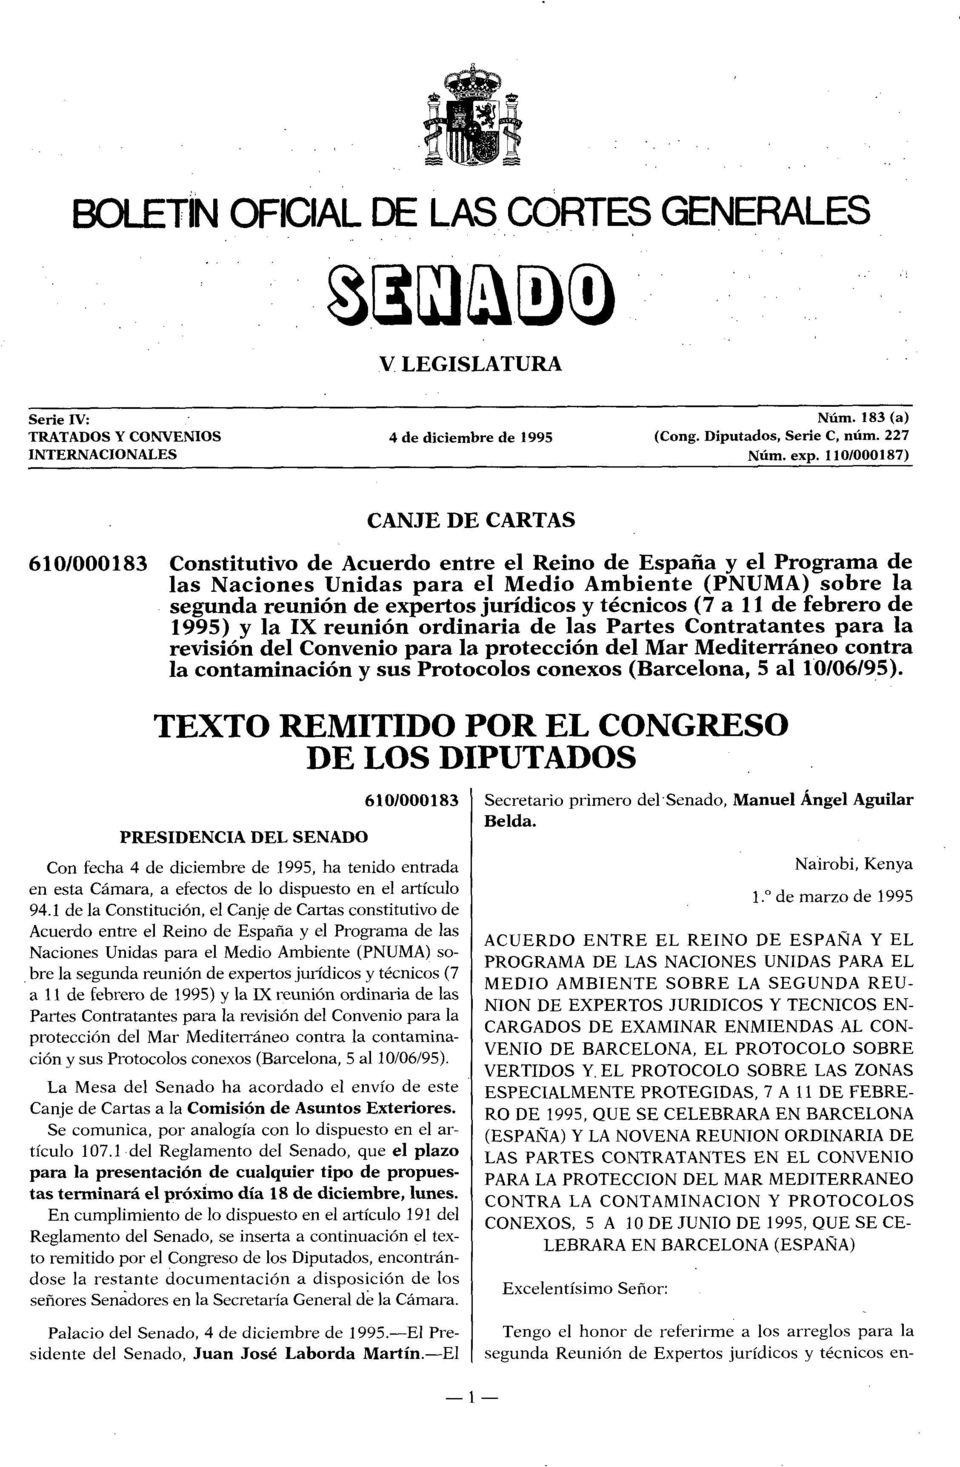 jurídicos y técnicos (7 a 11 de febrero de 1995) y la IX reunión ordinaria de las Partes Contratantes para la revisión del Convenio para la protección del Mar Mediterráneo contra la contaminación y